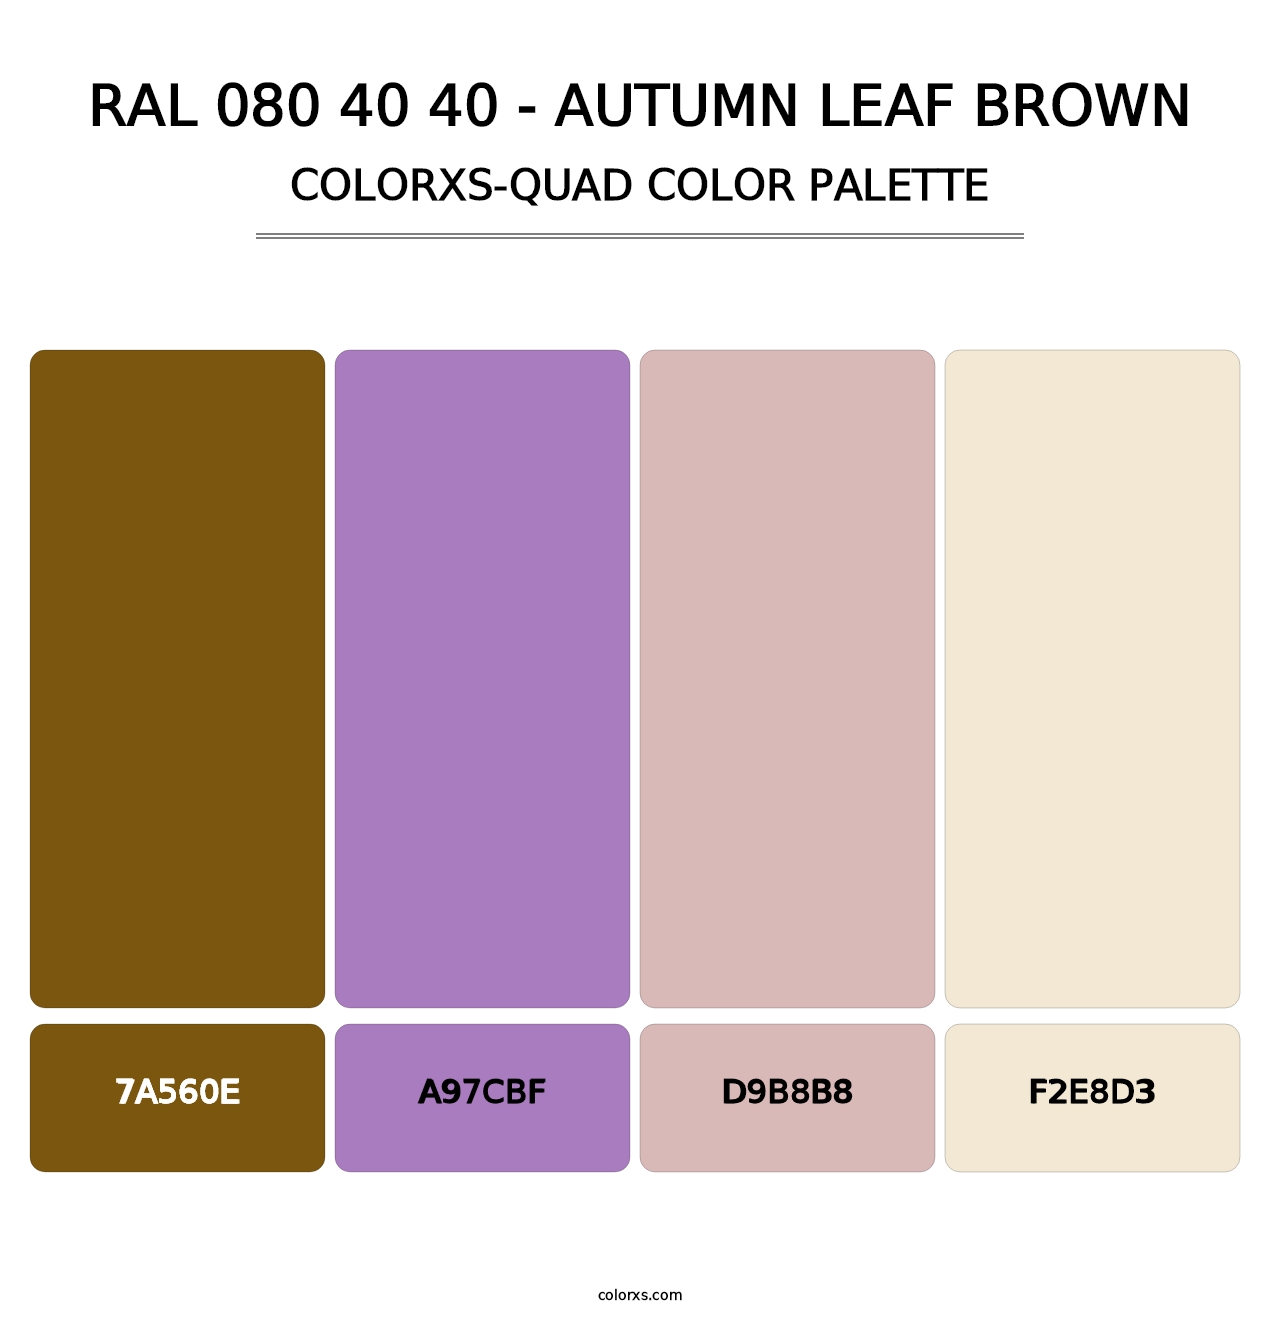 RAL 080 40 40 - Autumn Leaf Brown - Colorxs Quad Palette